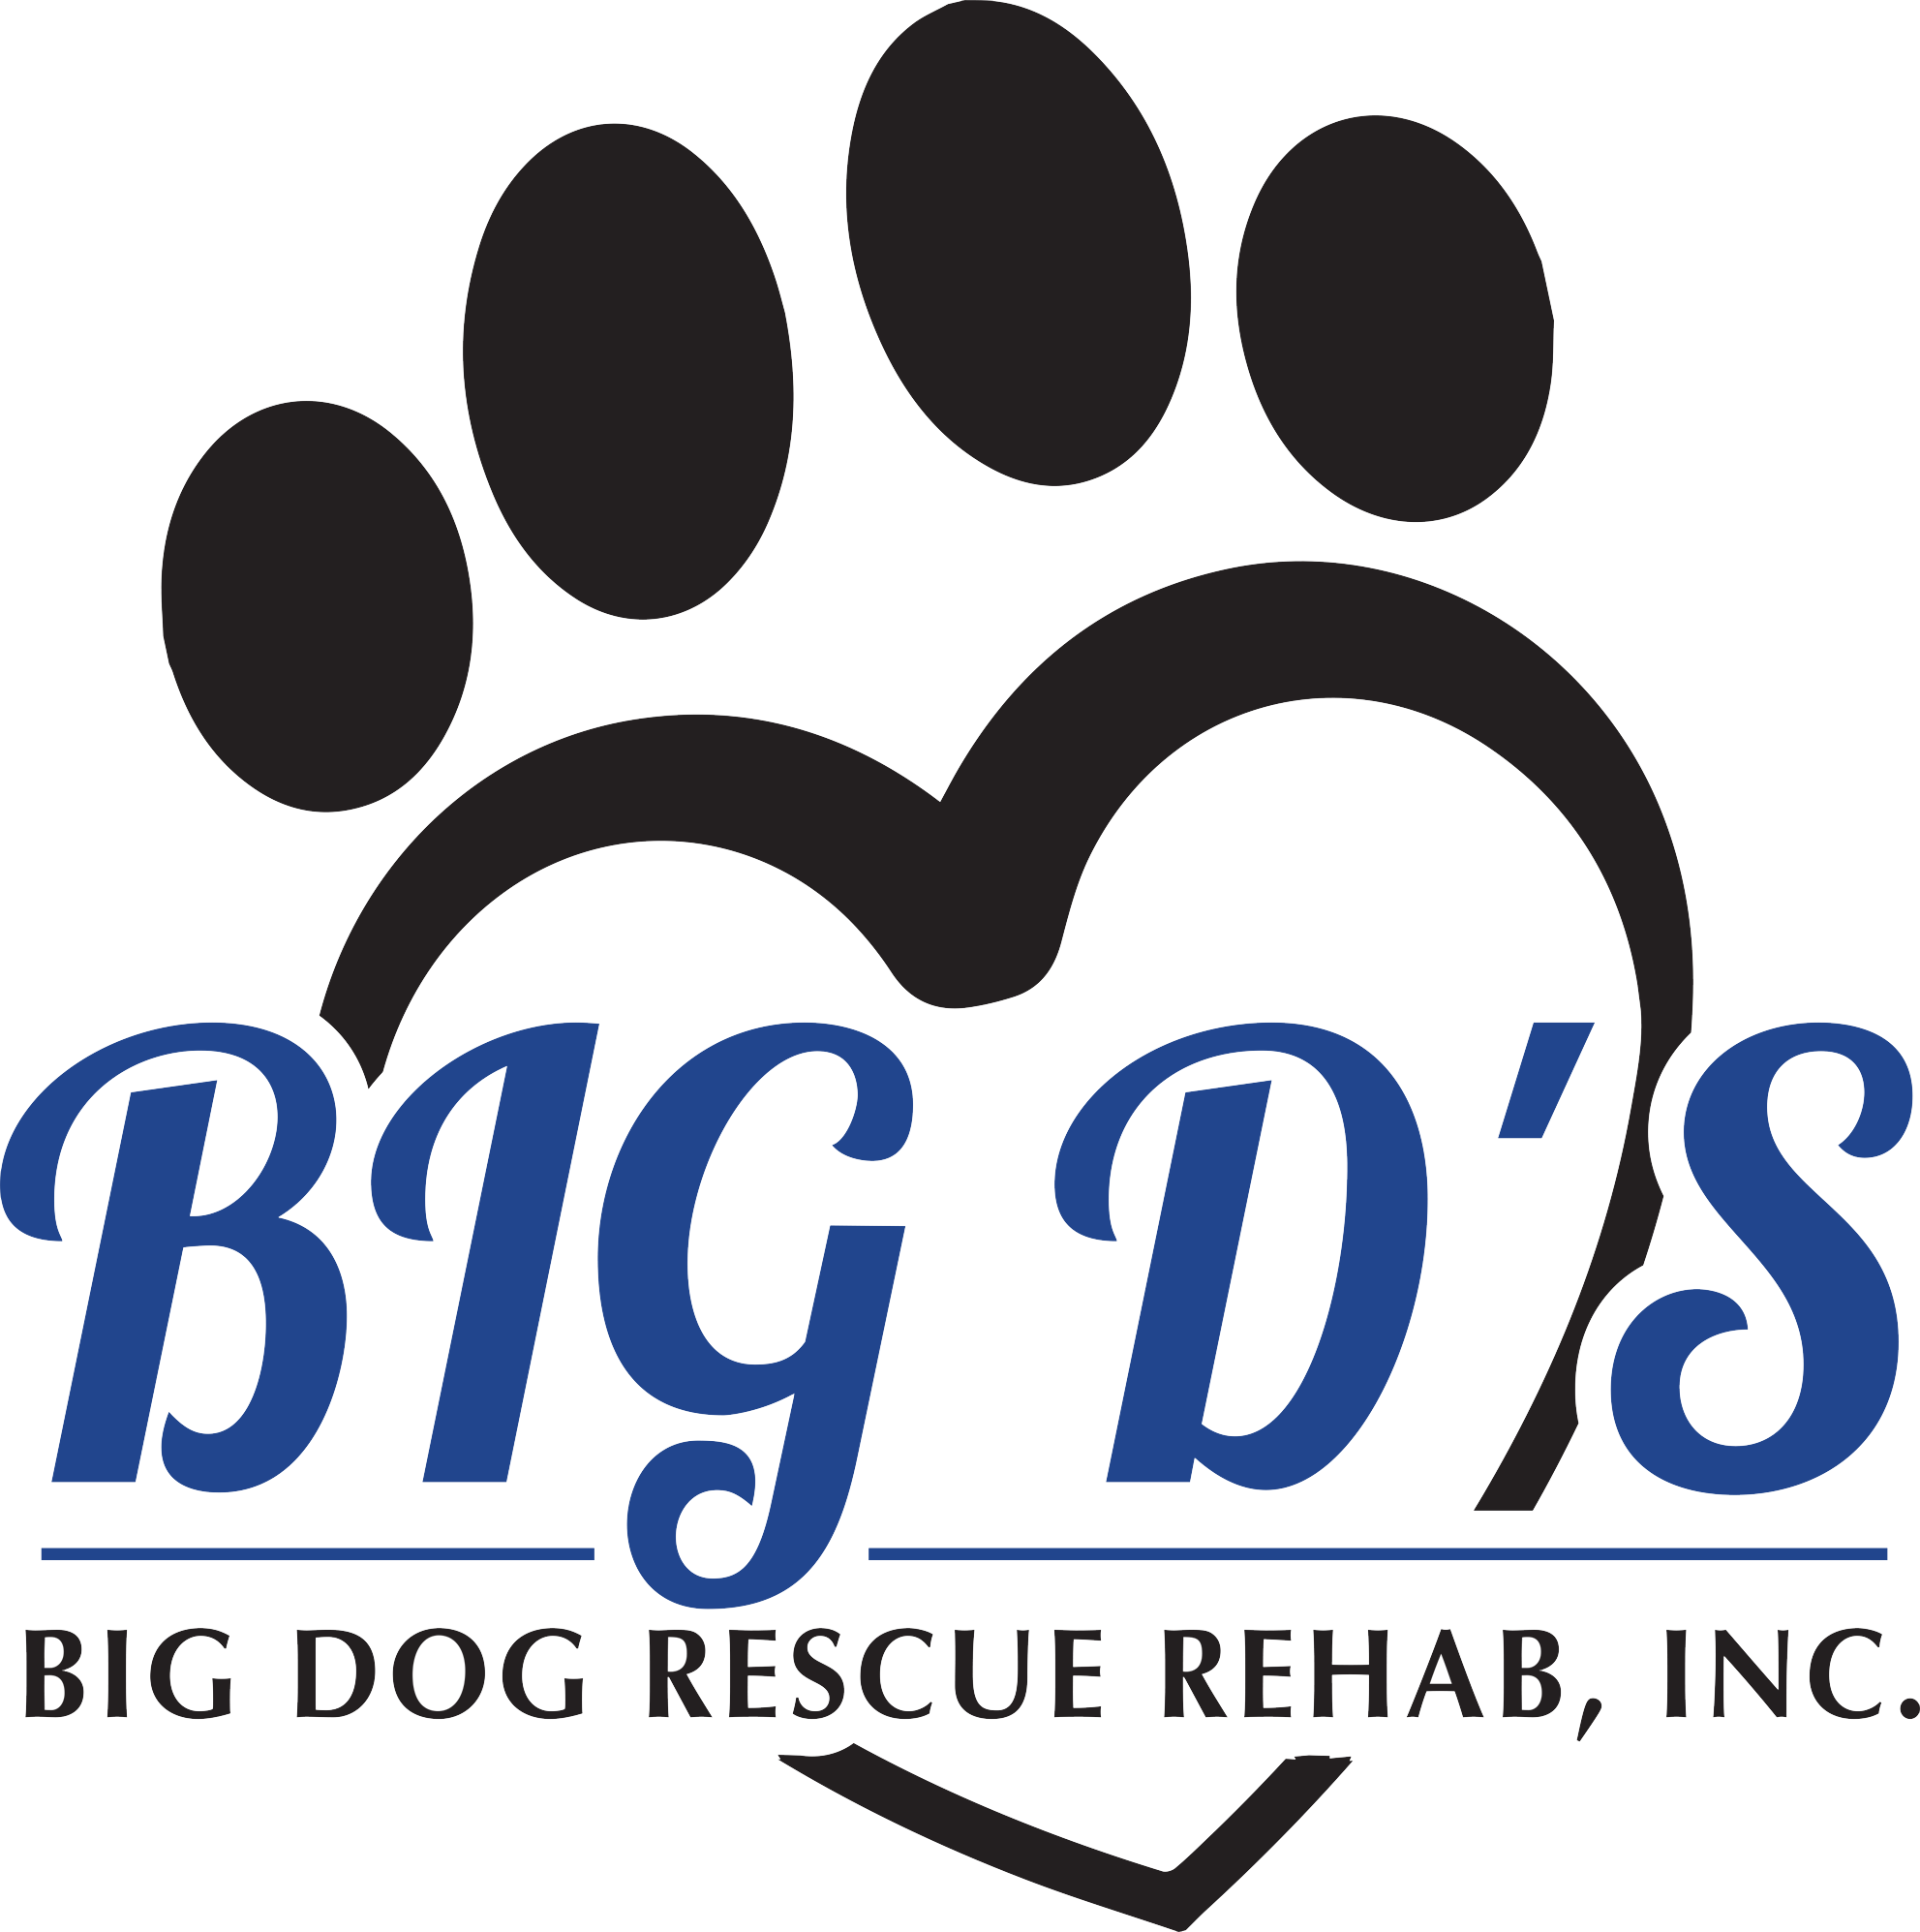 Big D's Big Dog Rehab